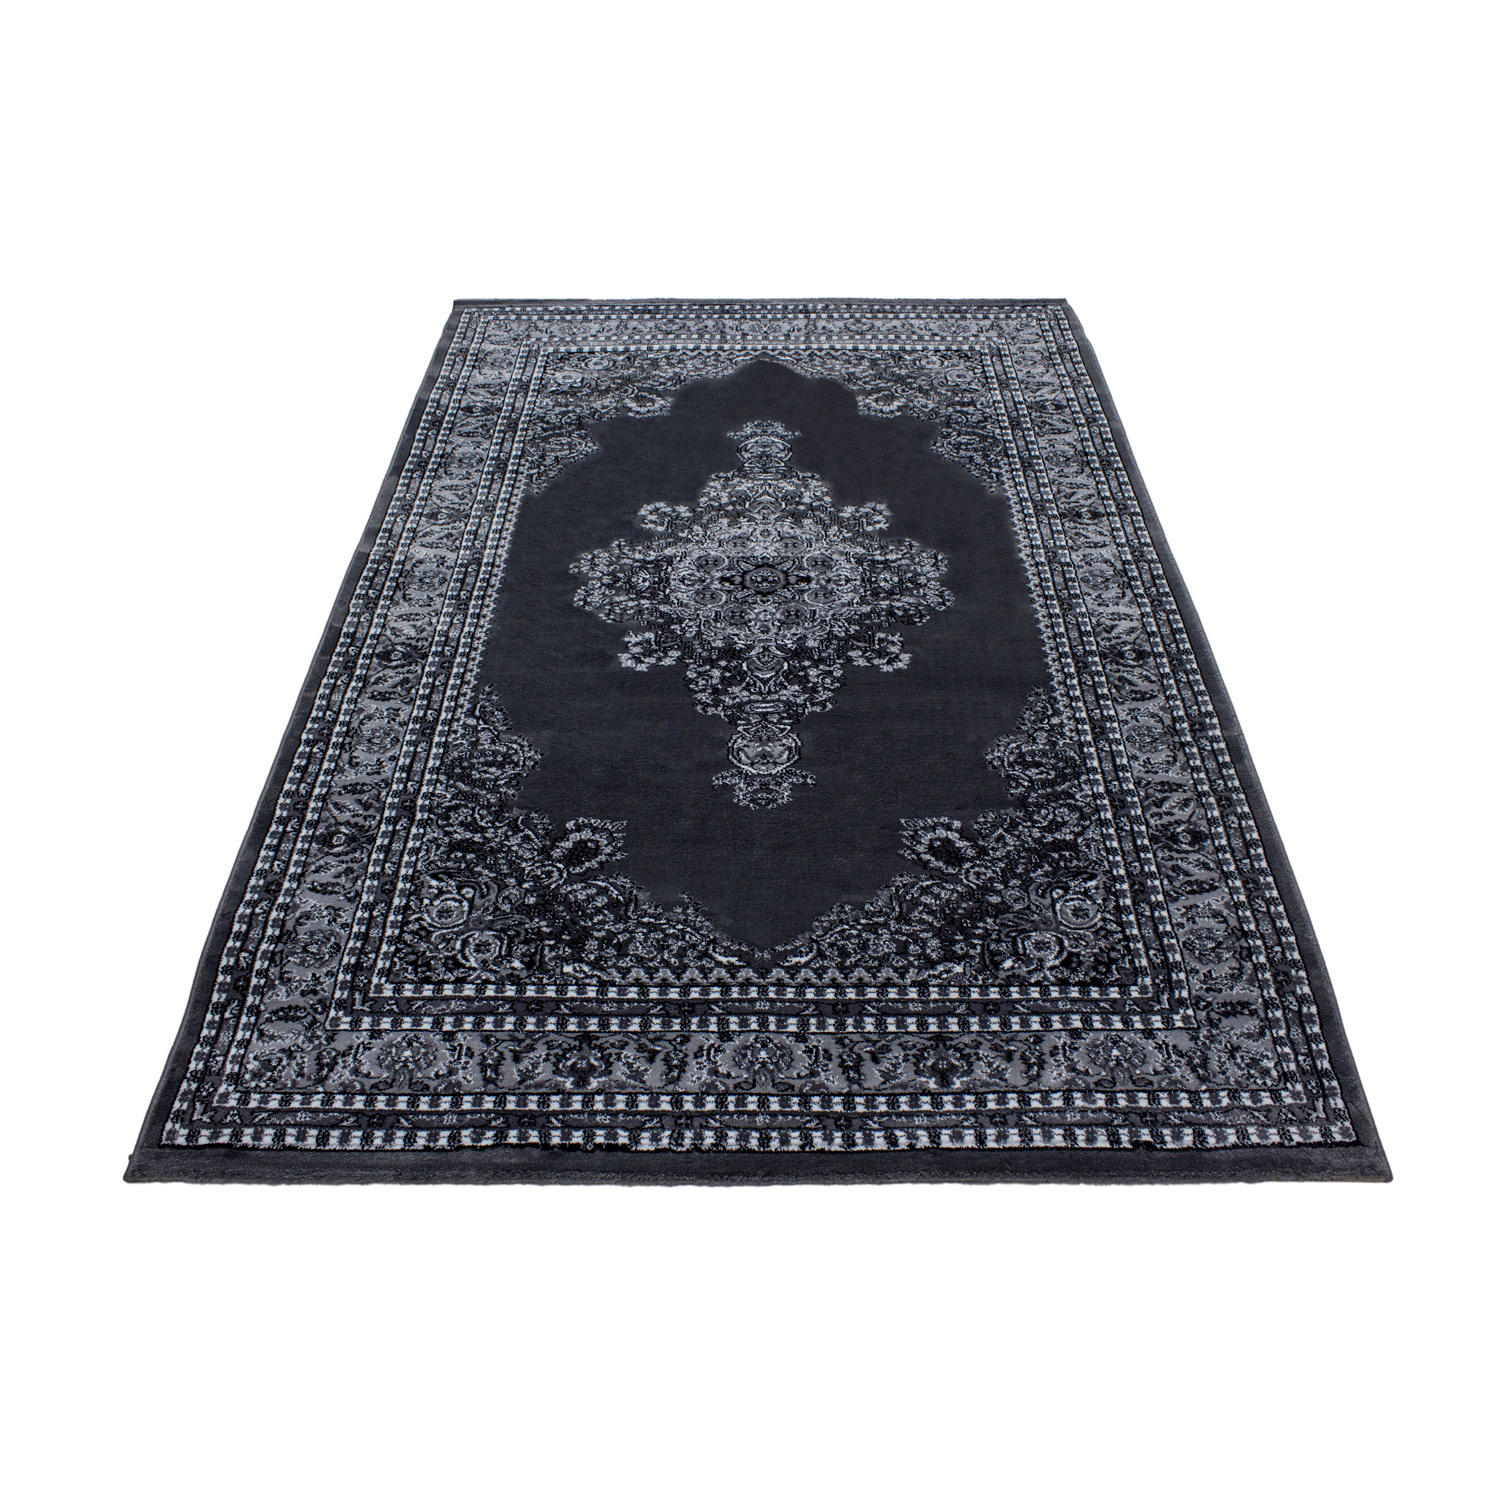 VÄVD MATTA Marrakesh  - grå, Klassisk, textil (160/230cm) - Esposa